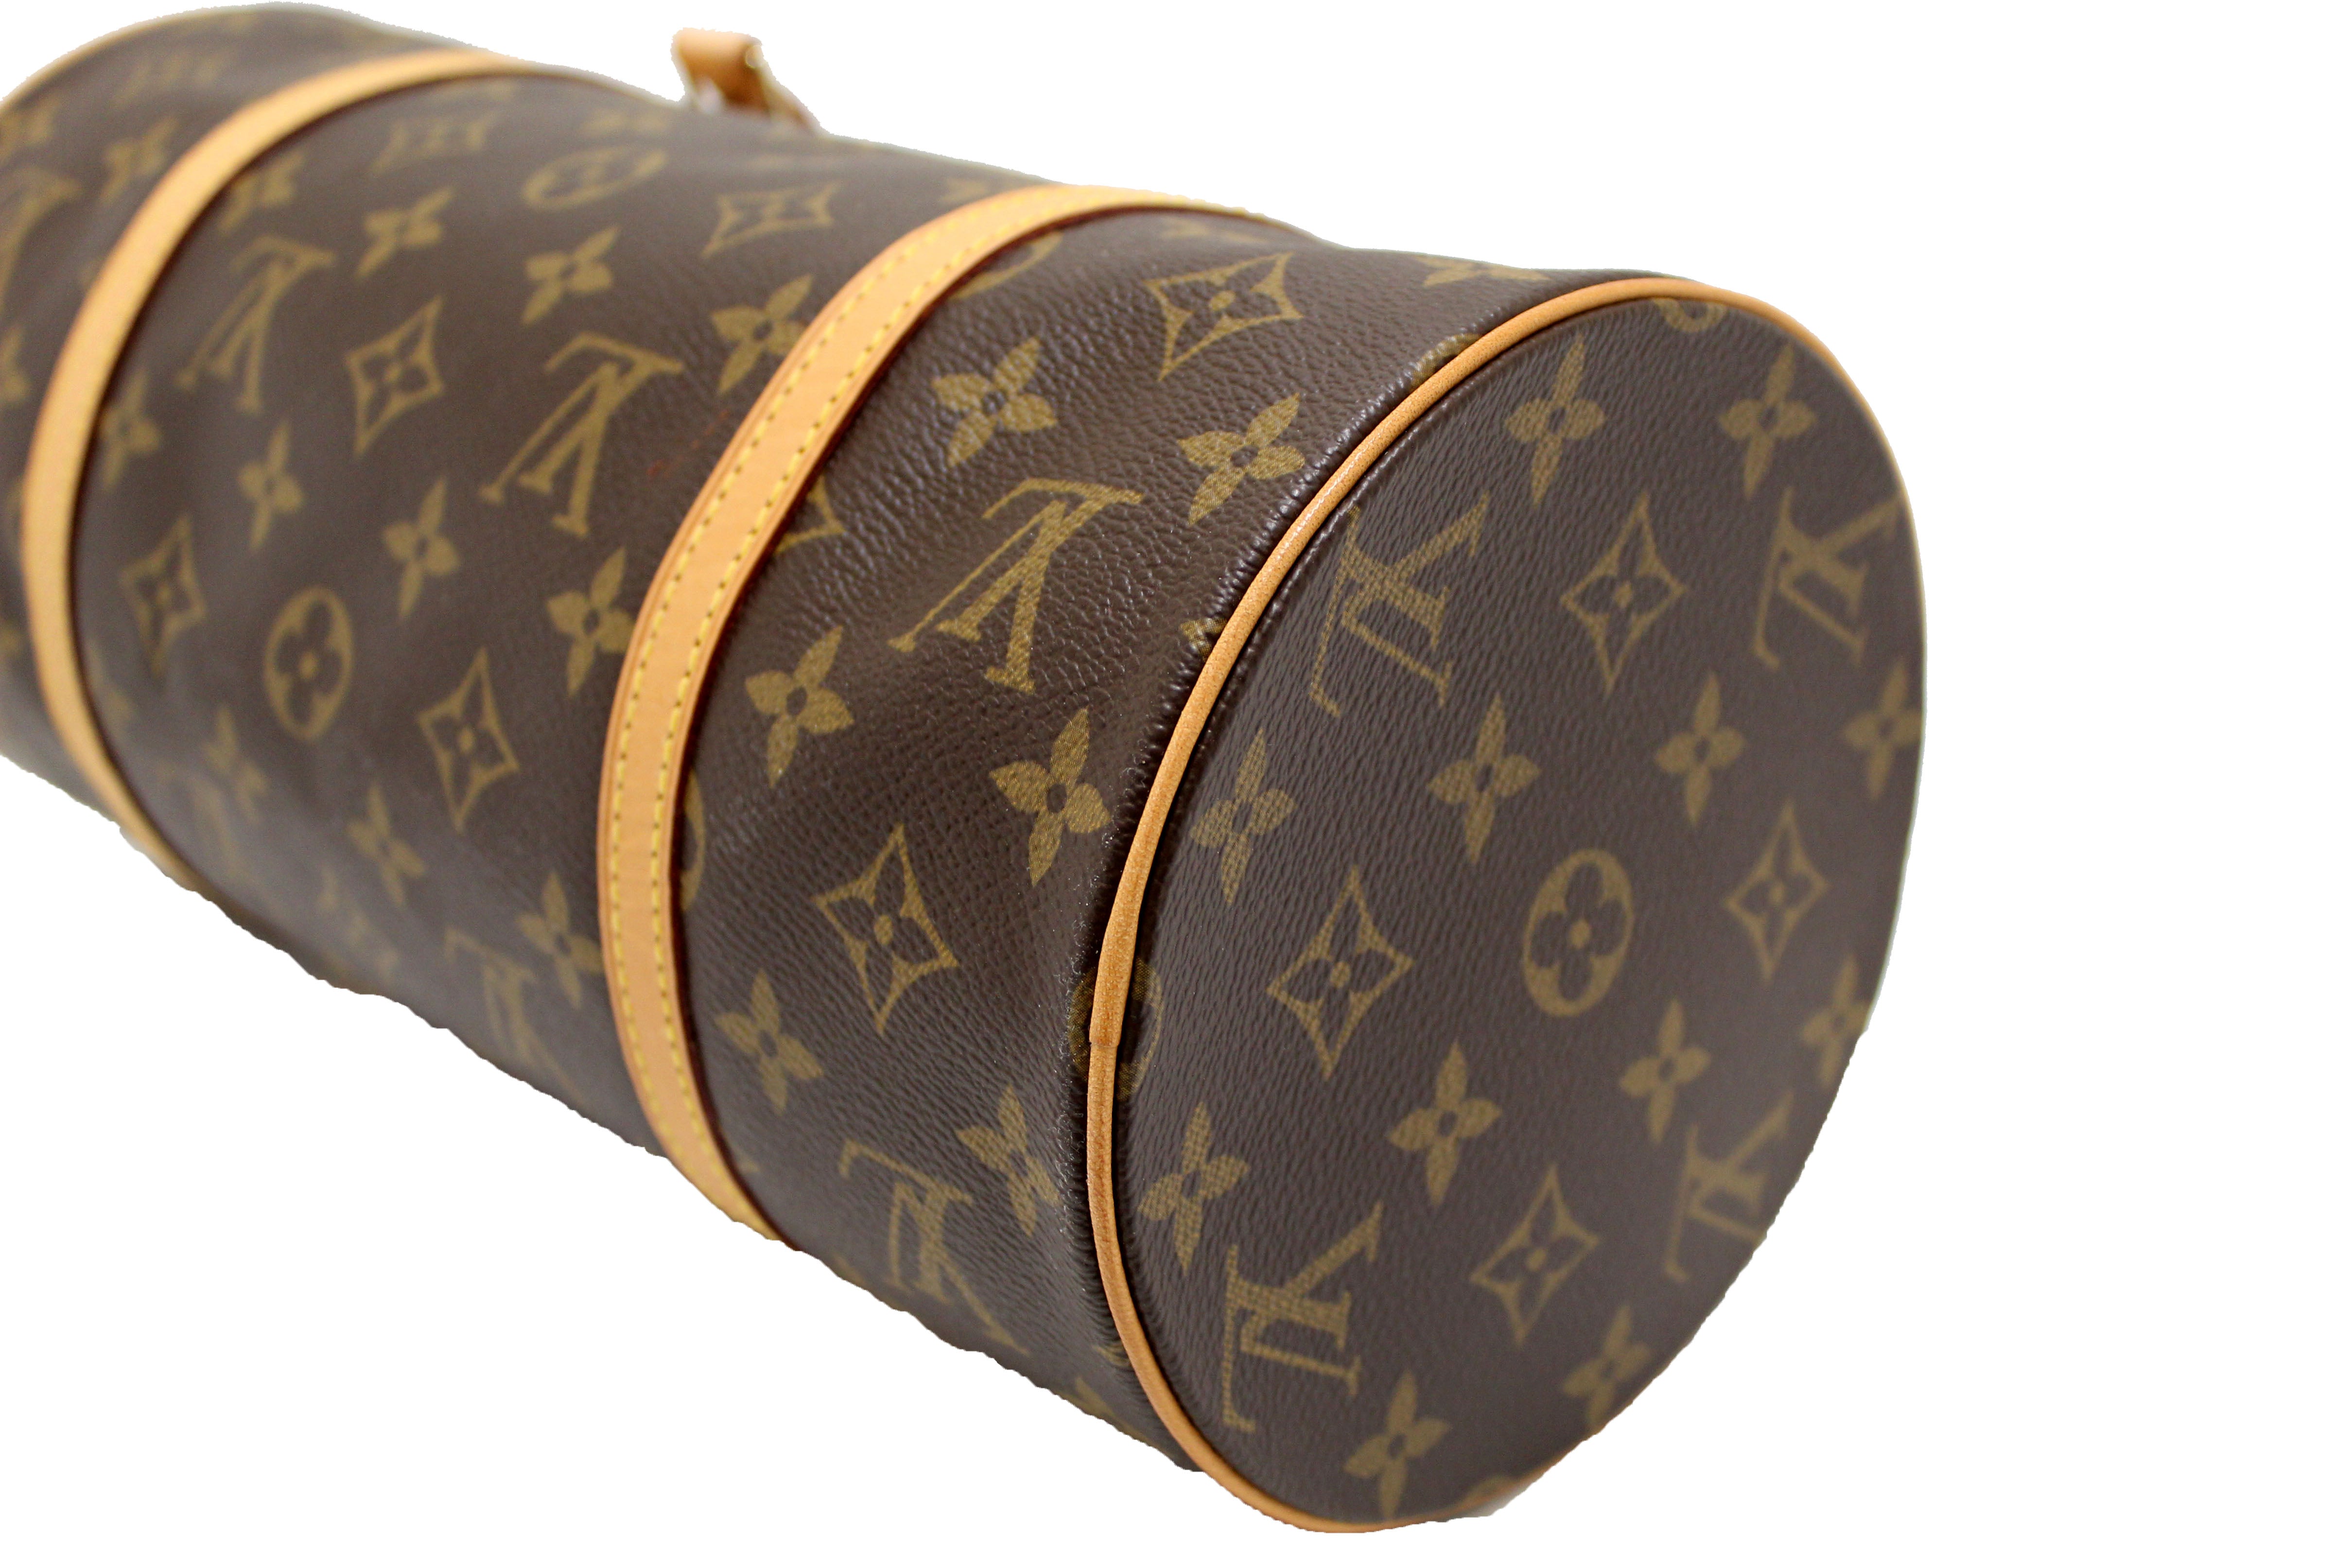 Authentic Louis Vuitton Classic Monogram Papillon 30 Handbag